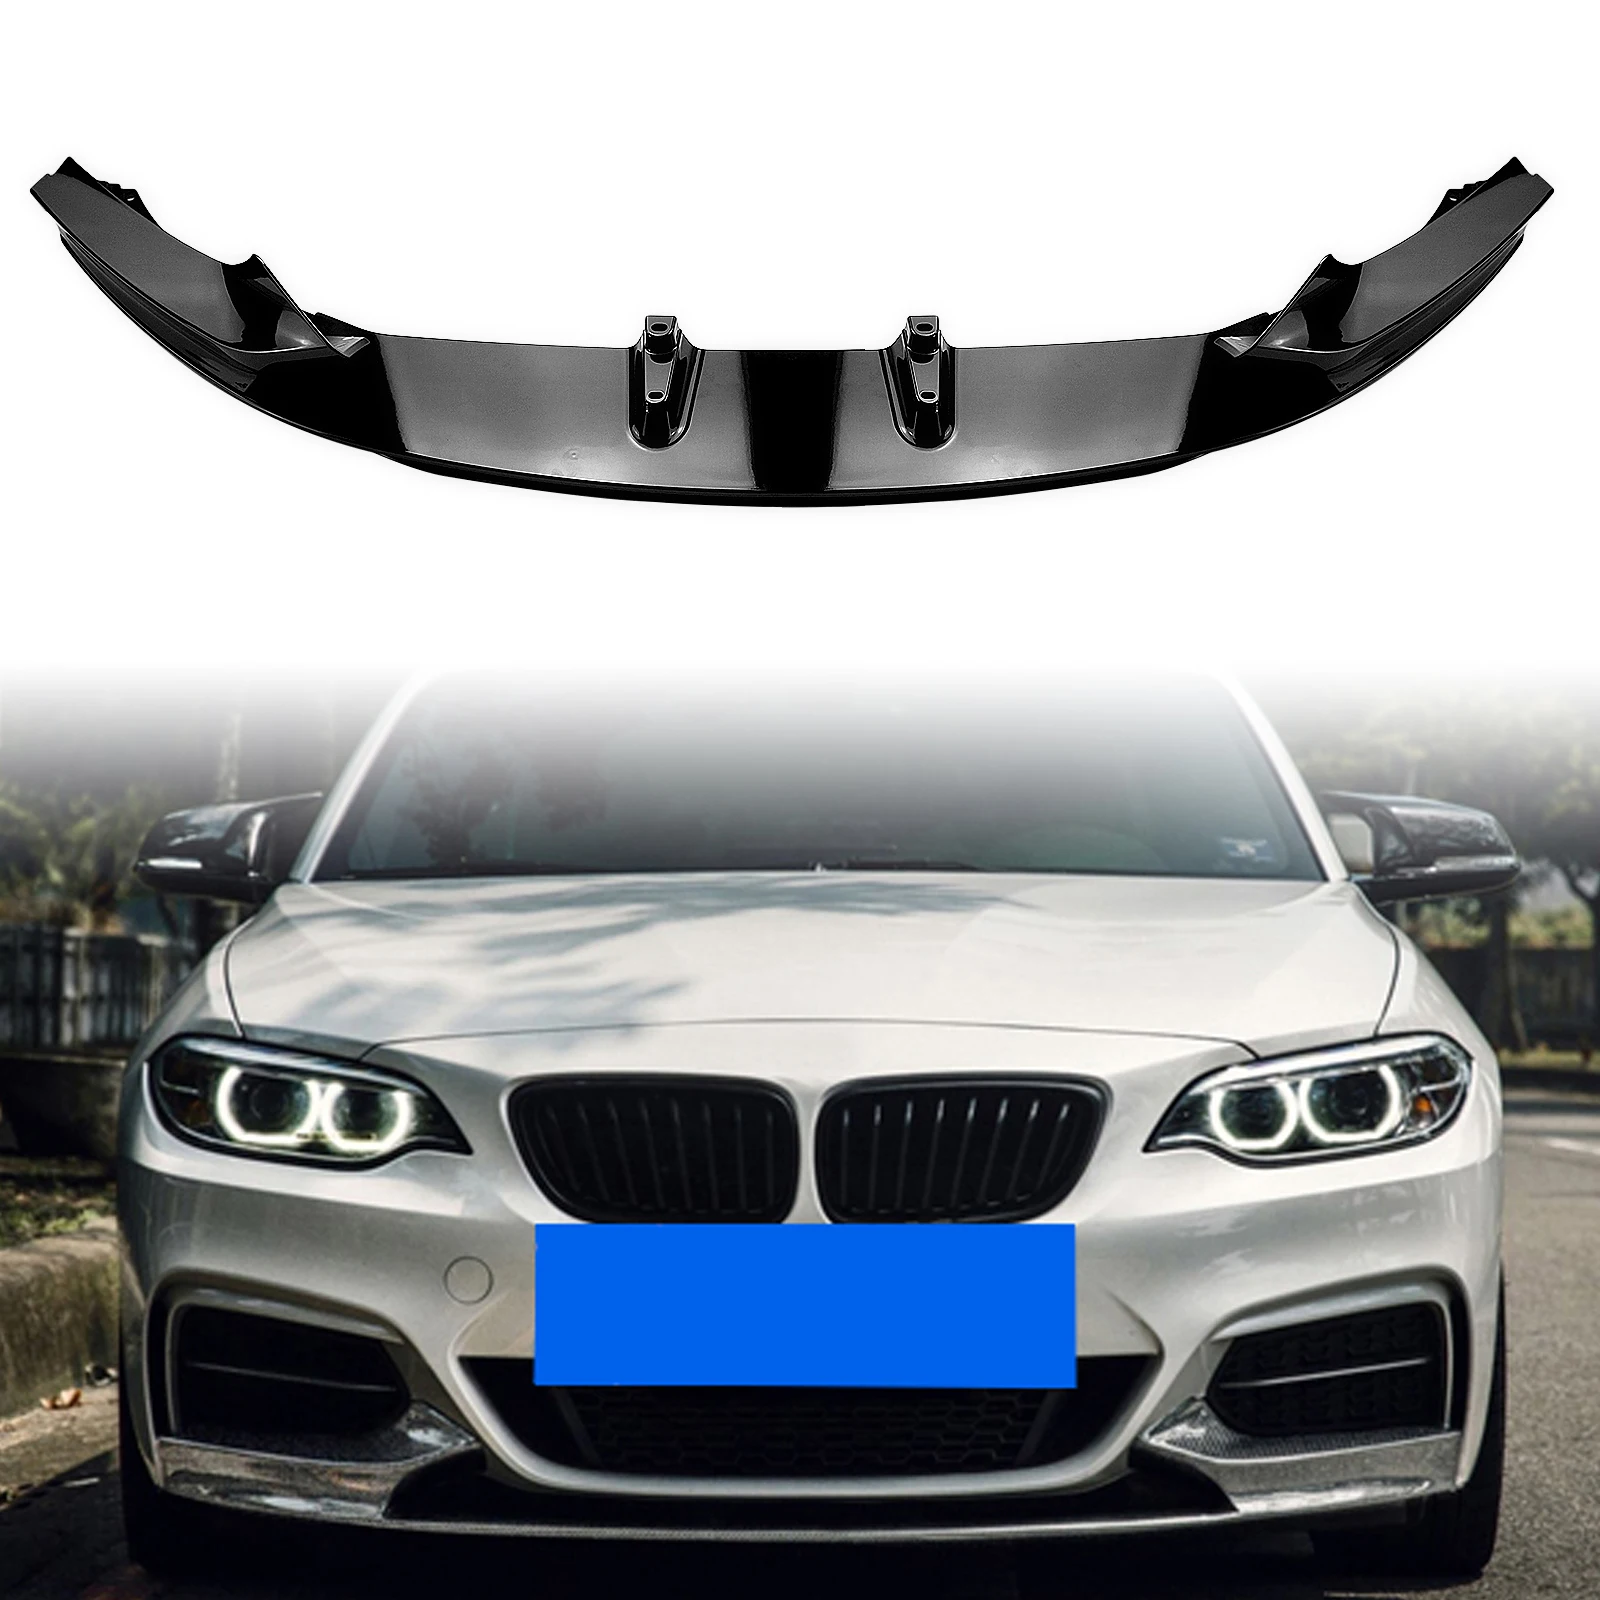 

For BMW 2 Series F22 F23 2014-2021 230i M240i 220i Coupe 2-Door Front Bumper Spoiler Splitter Lip Gloss Black/Carbon Fiber Look